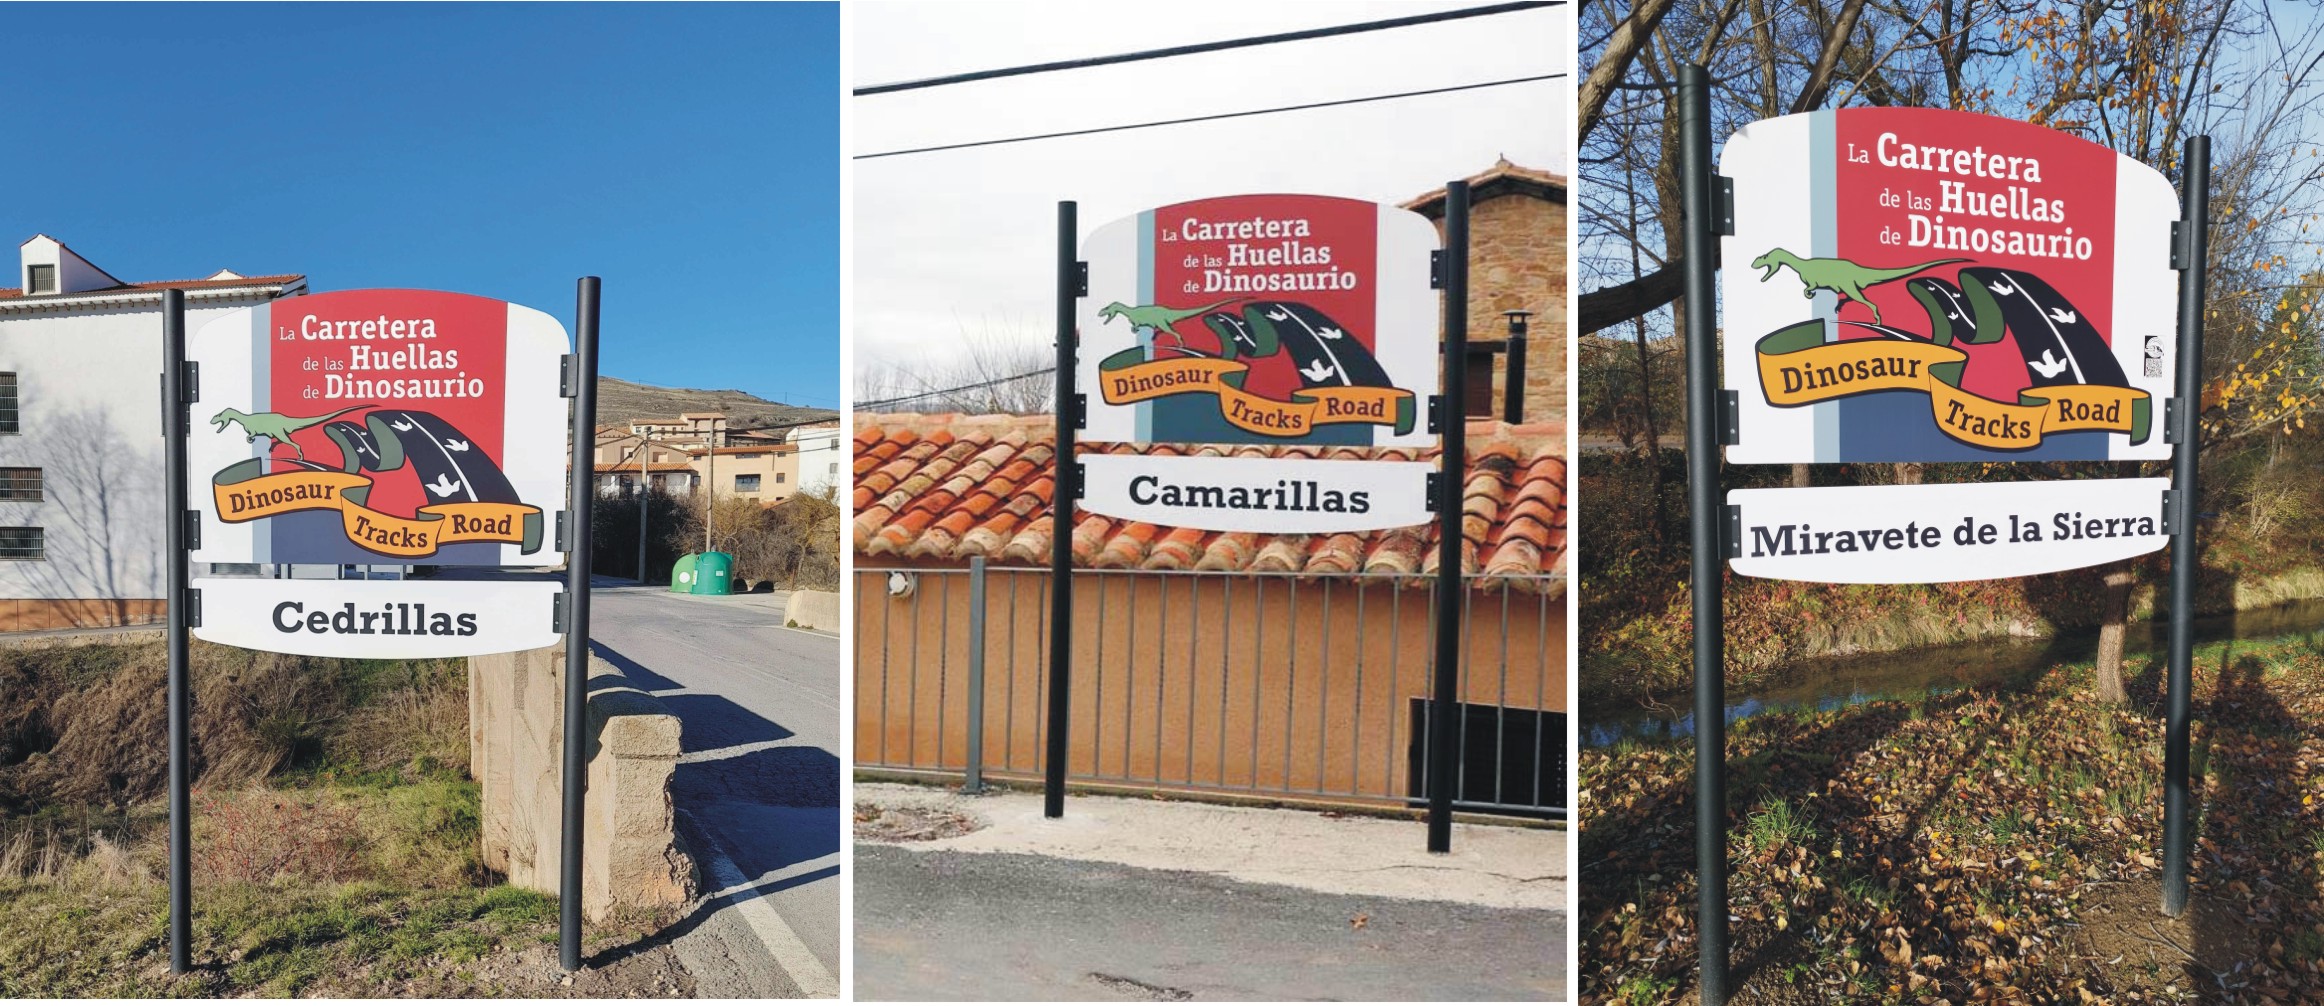 Algunas de las nuevas señales instaladas en 2022 en los municipios por los que pasa La Carretera de las Huellas de Dinosaurio en Teruel. Foto: Fundación Dinólpolis